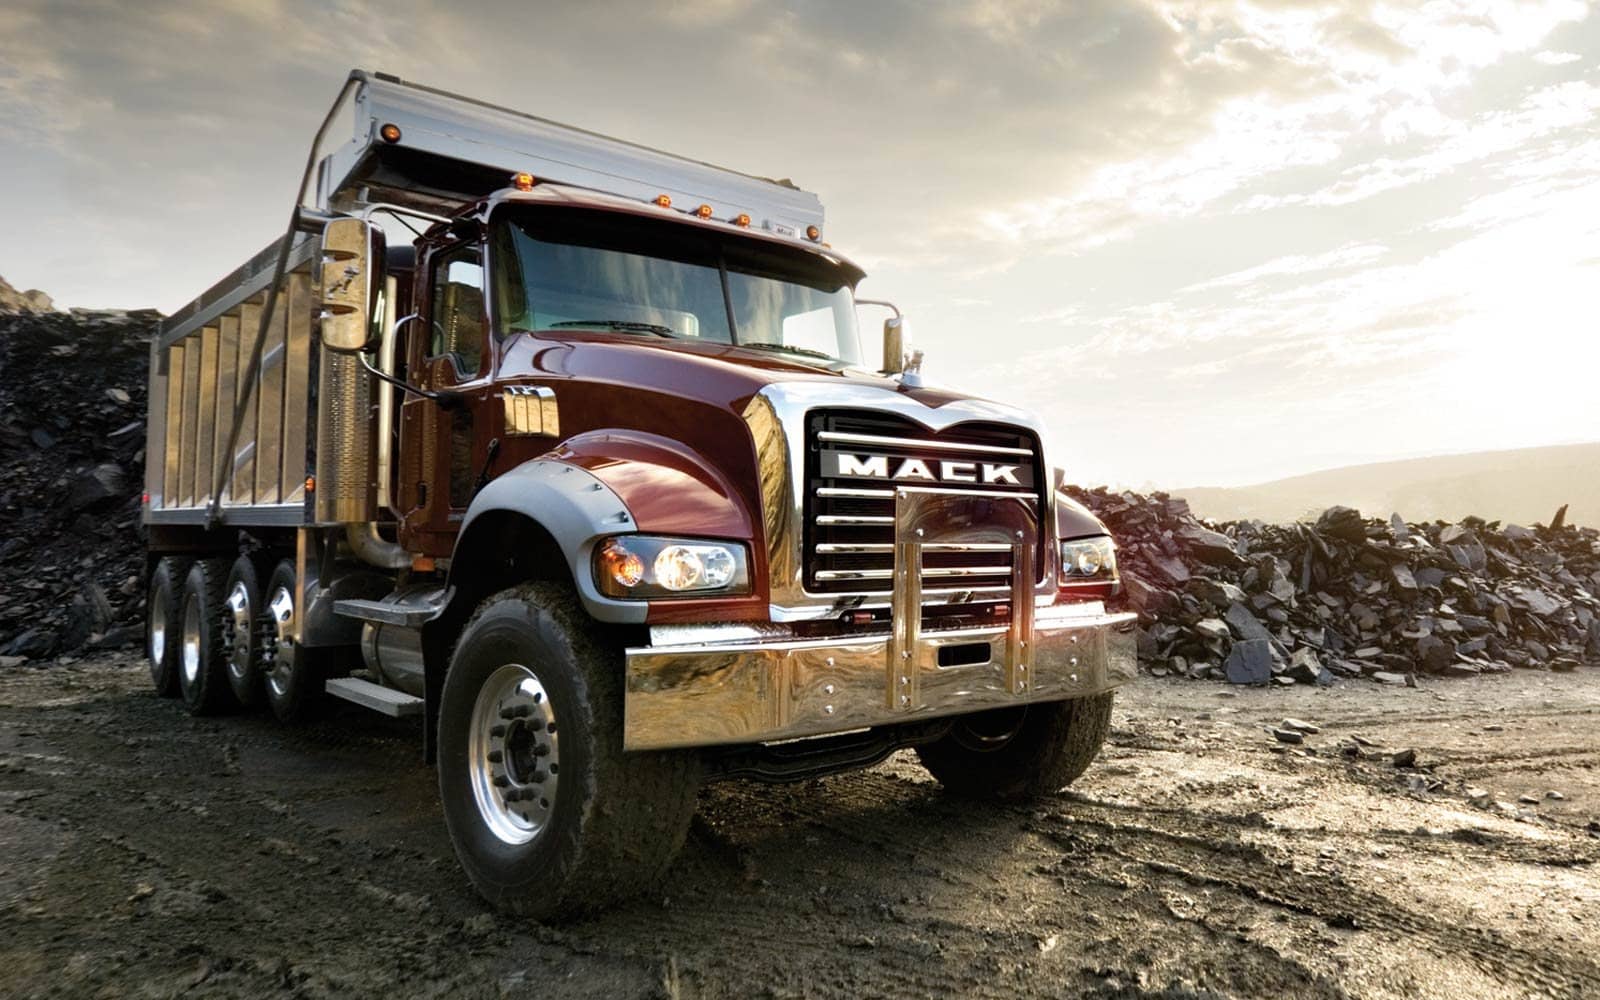 Nuss Truck & Equipment - Mankato (MN 56001), US, pickup trucks for sale